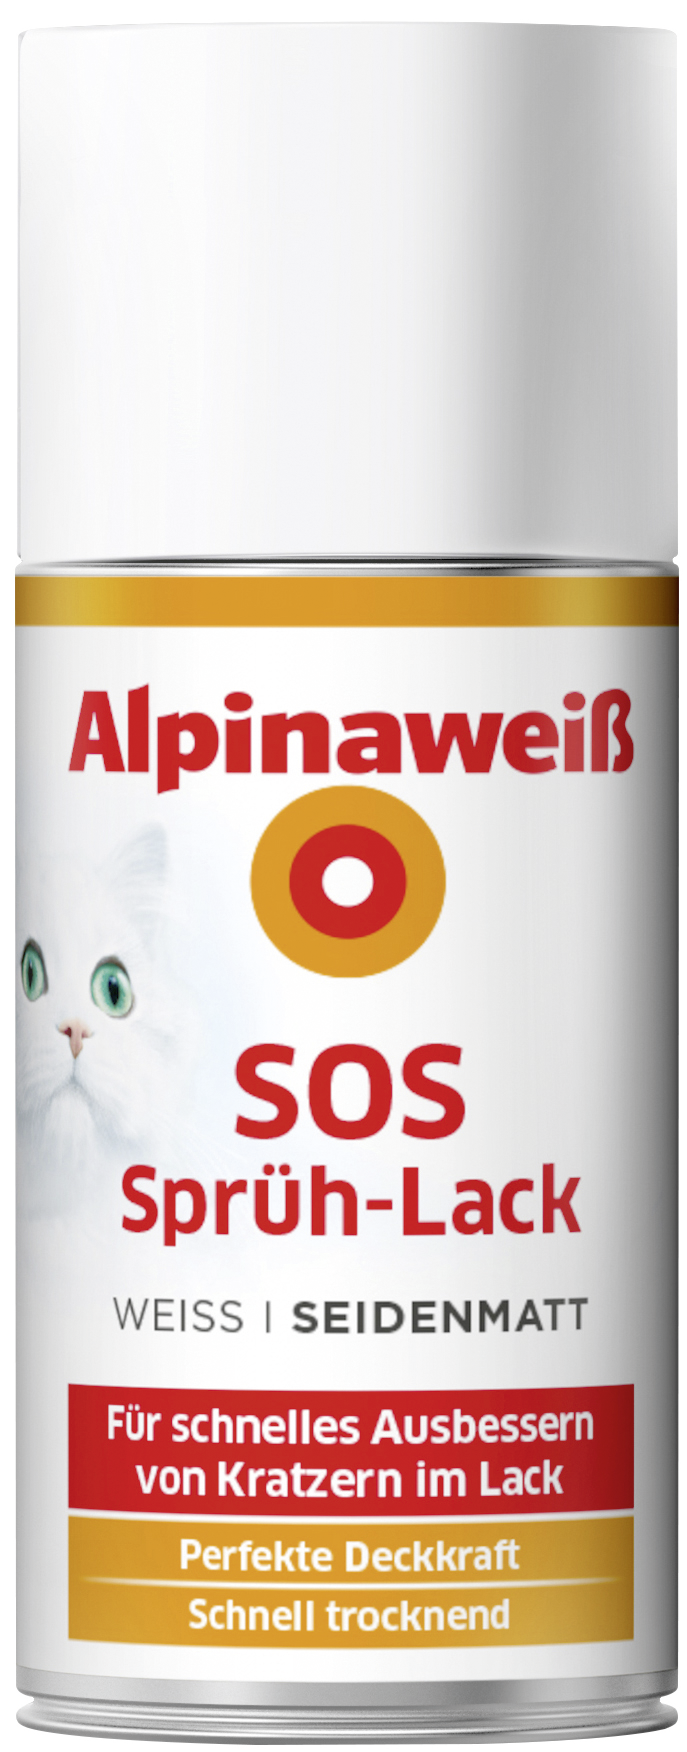 Alpinaweiß SOS Sprüh-Lack 150 ml, seidenmatt